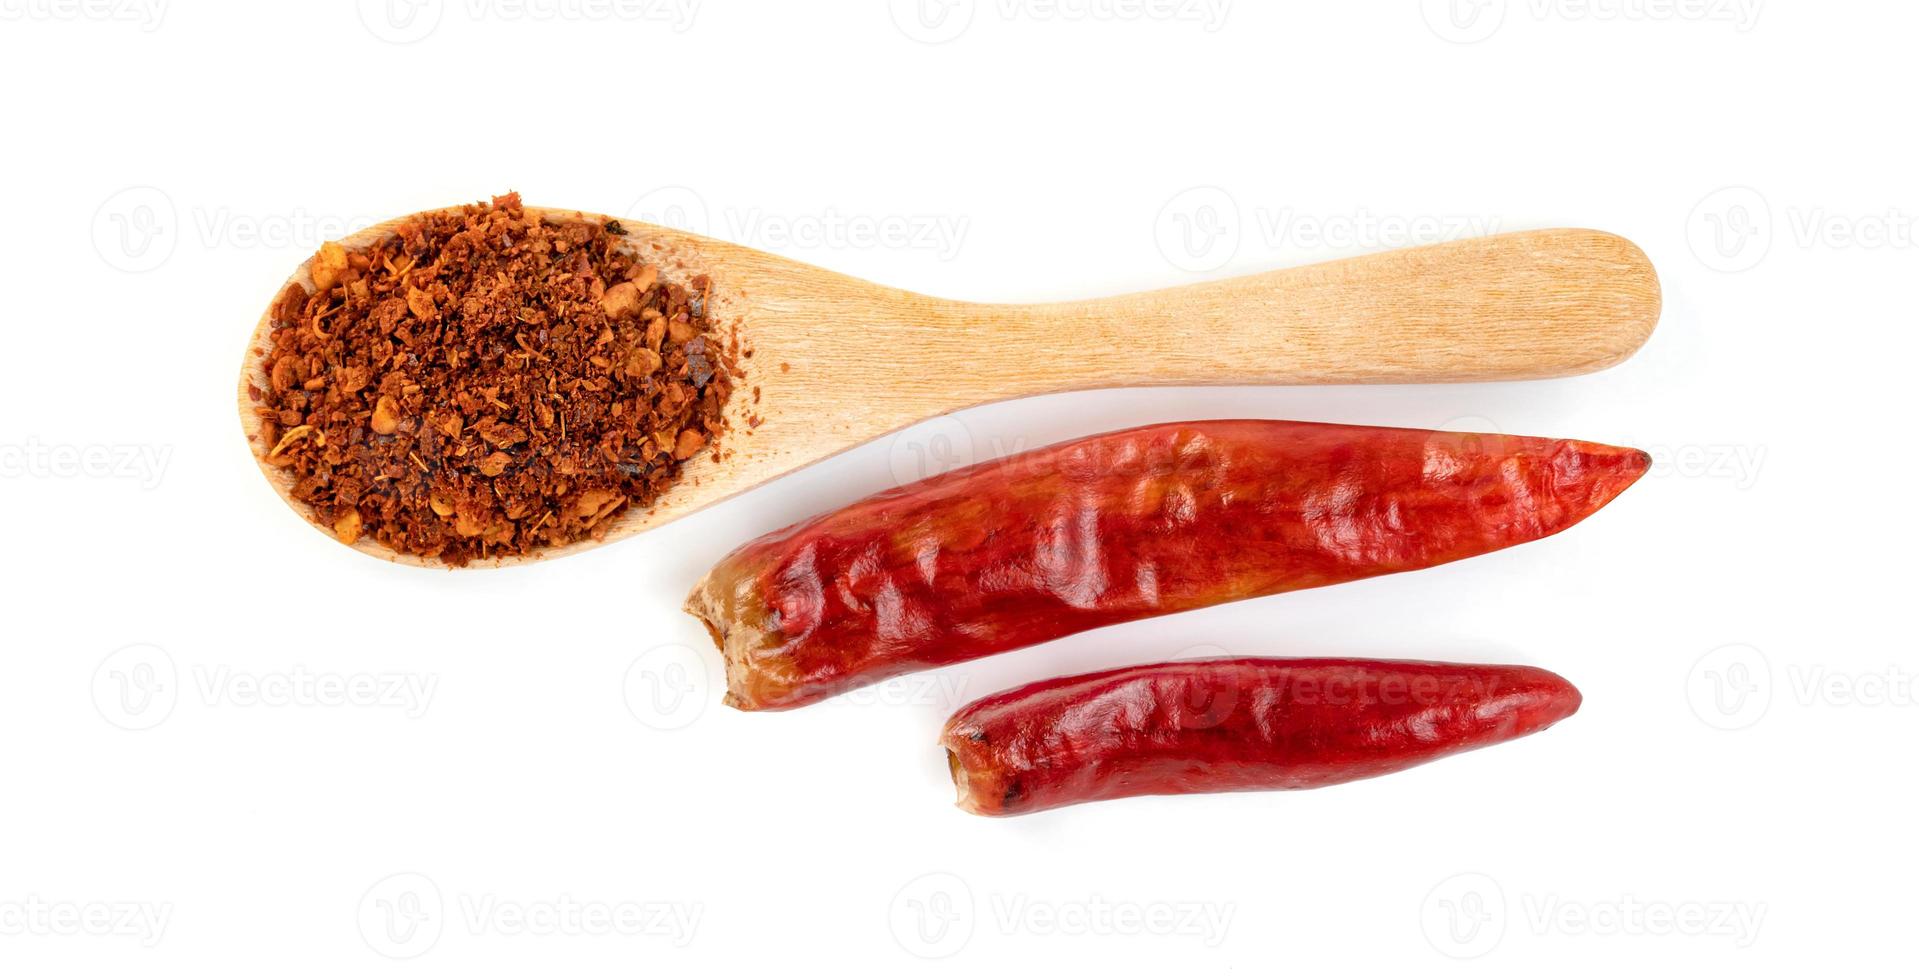 röd mald paprika pulveriserad eller torr chilipeppar med träslev isolerad på vit bakgrund foto